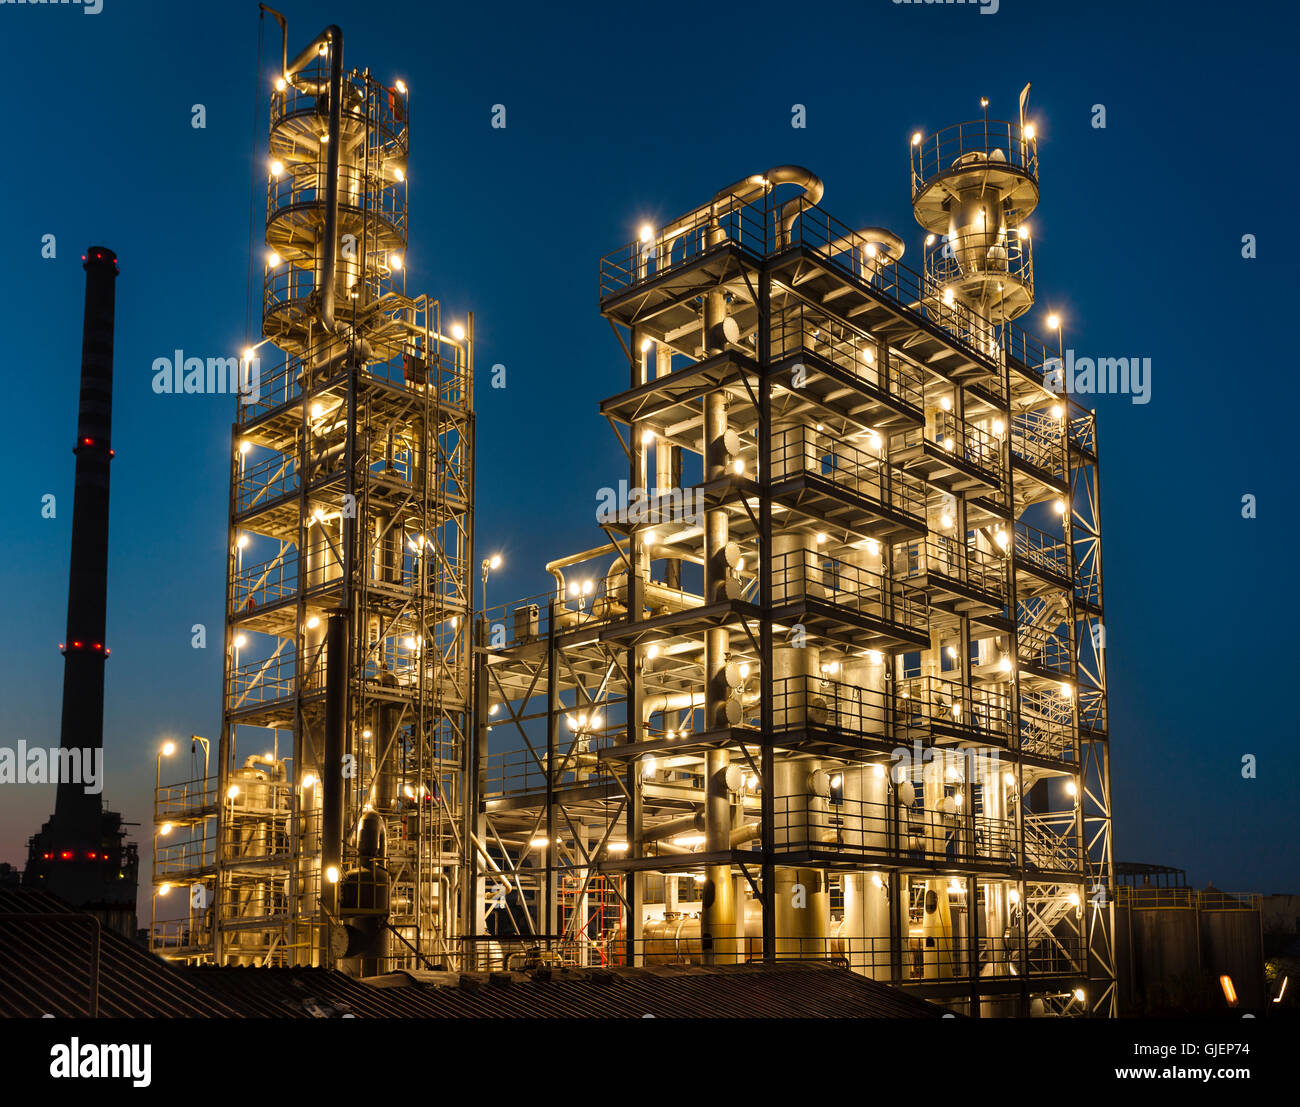 Vue générale d'une raffinerie de pétrole est éclairée la nuit, les pipelines et les tours, l'industrie lourde Banque D'Images